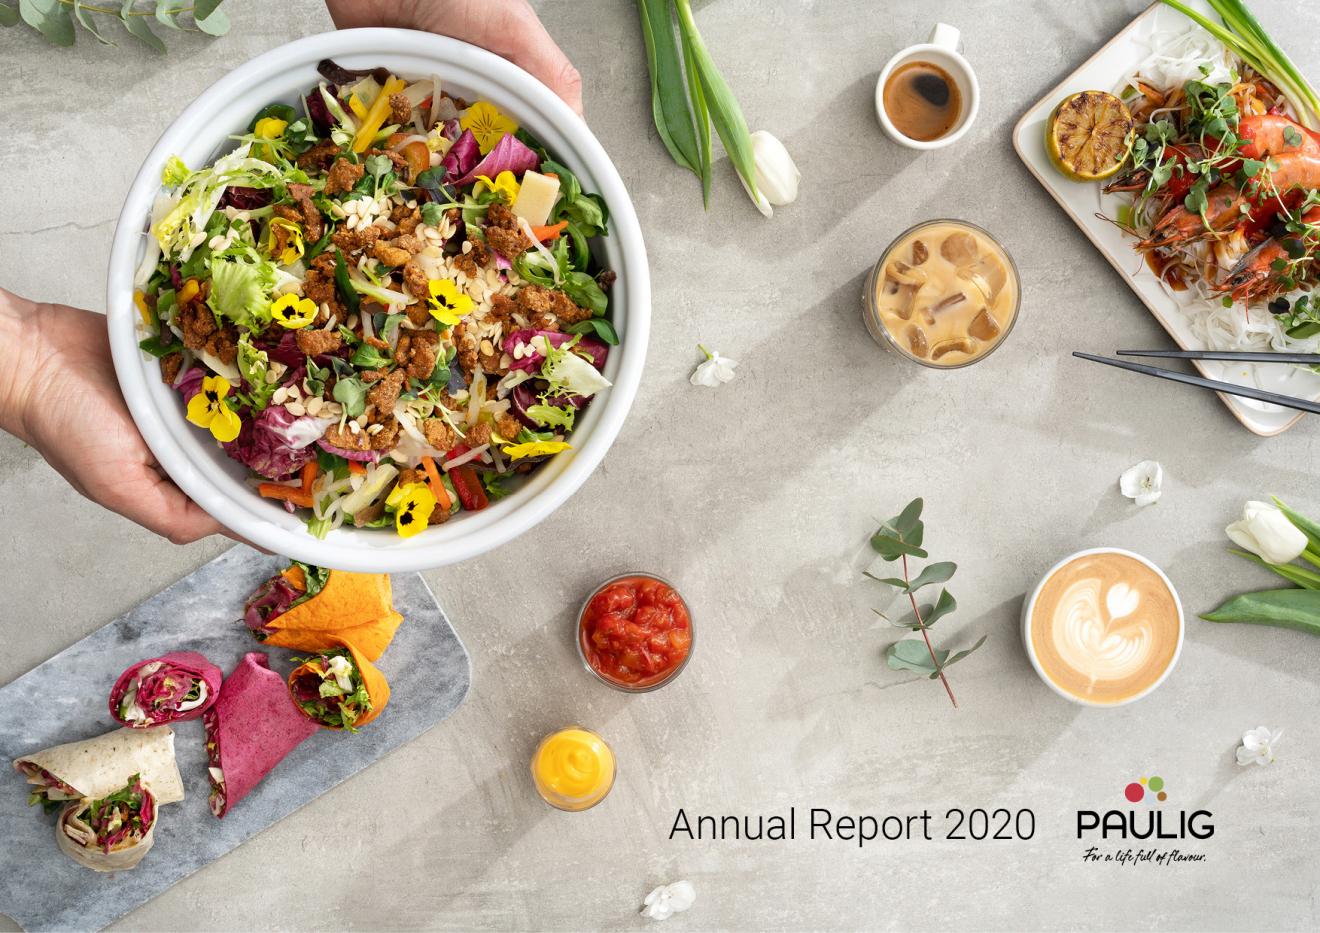 Paulig's Annual Report 2020